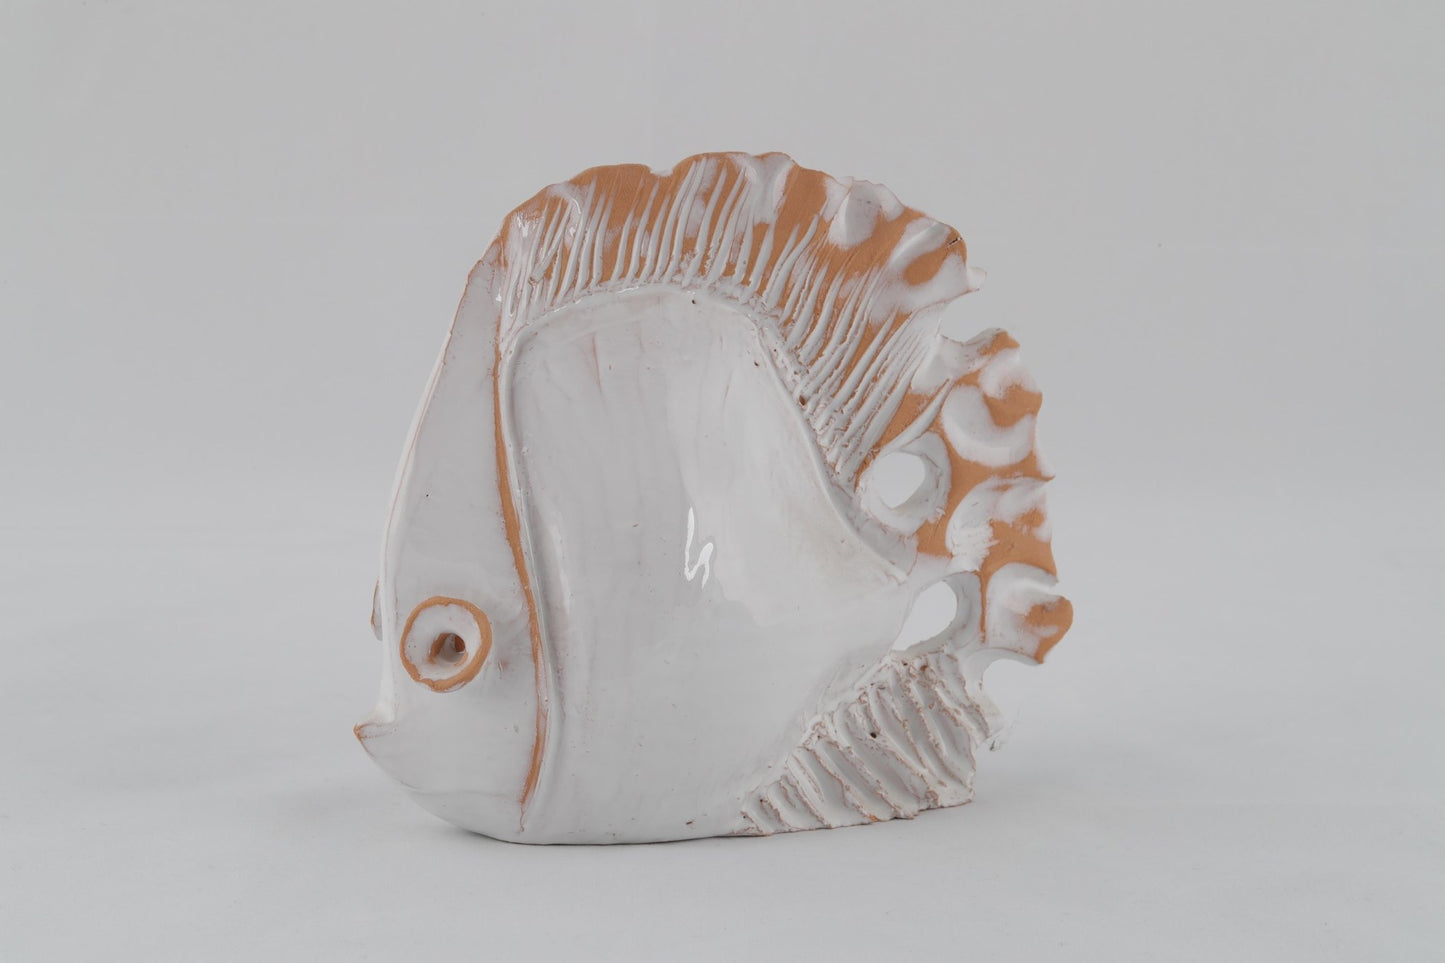 Pesce bianco, scultura media - Artigianato Pasella